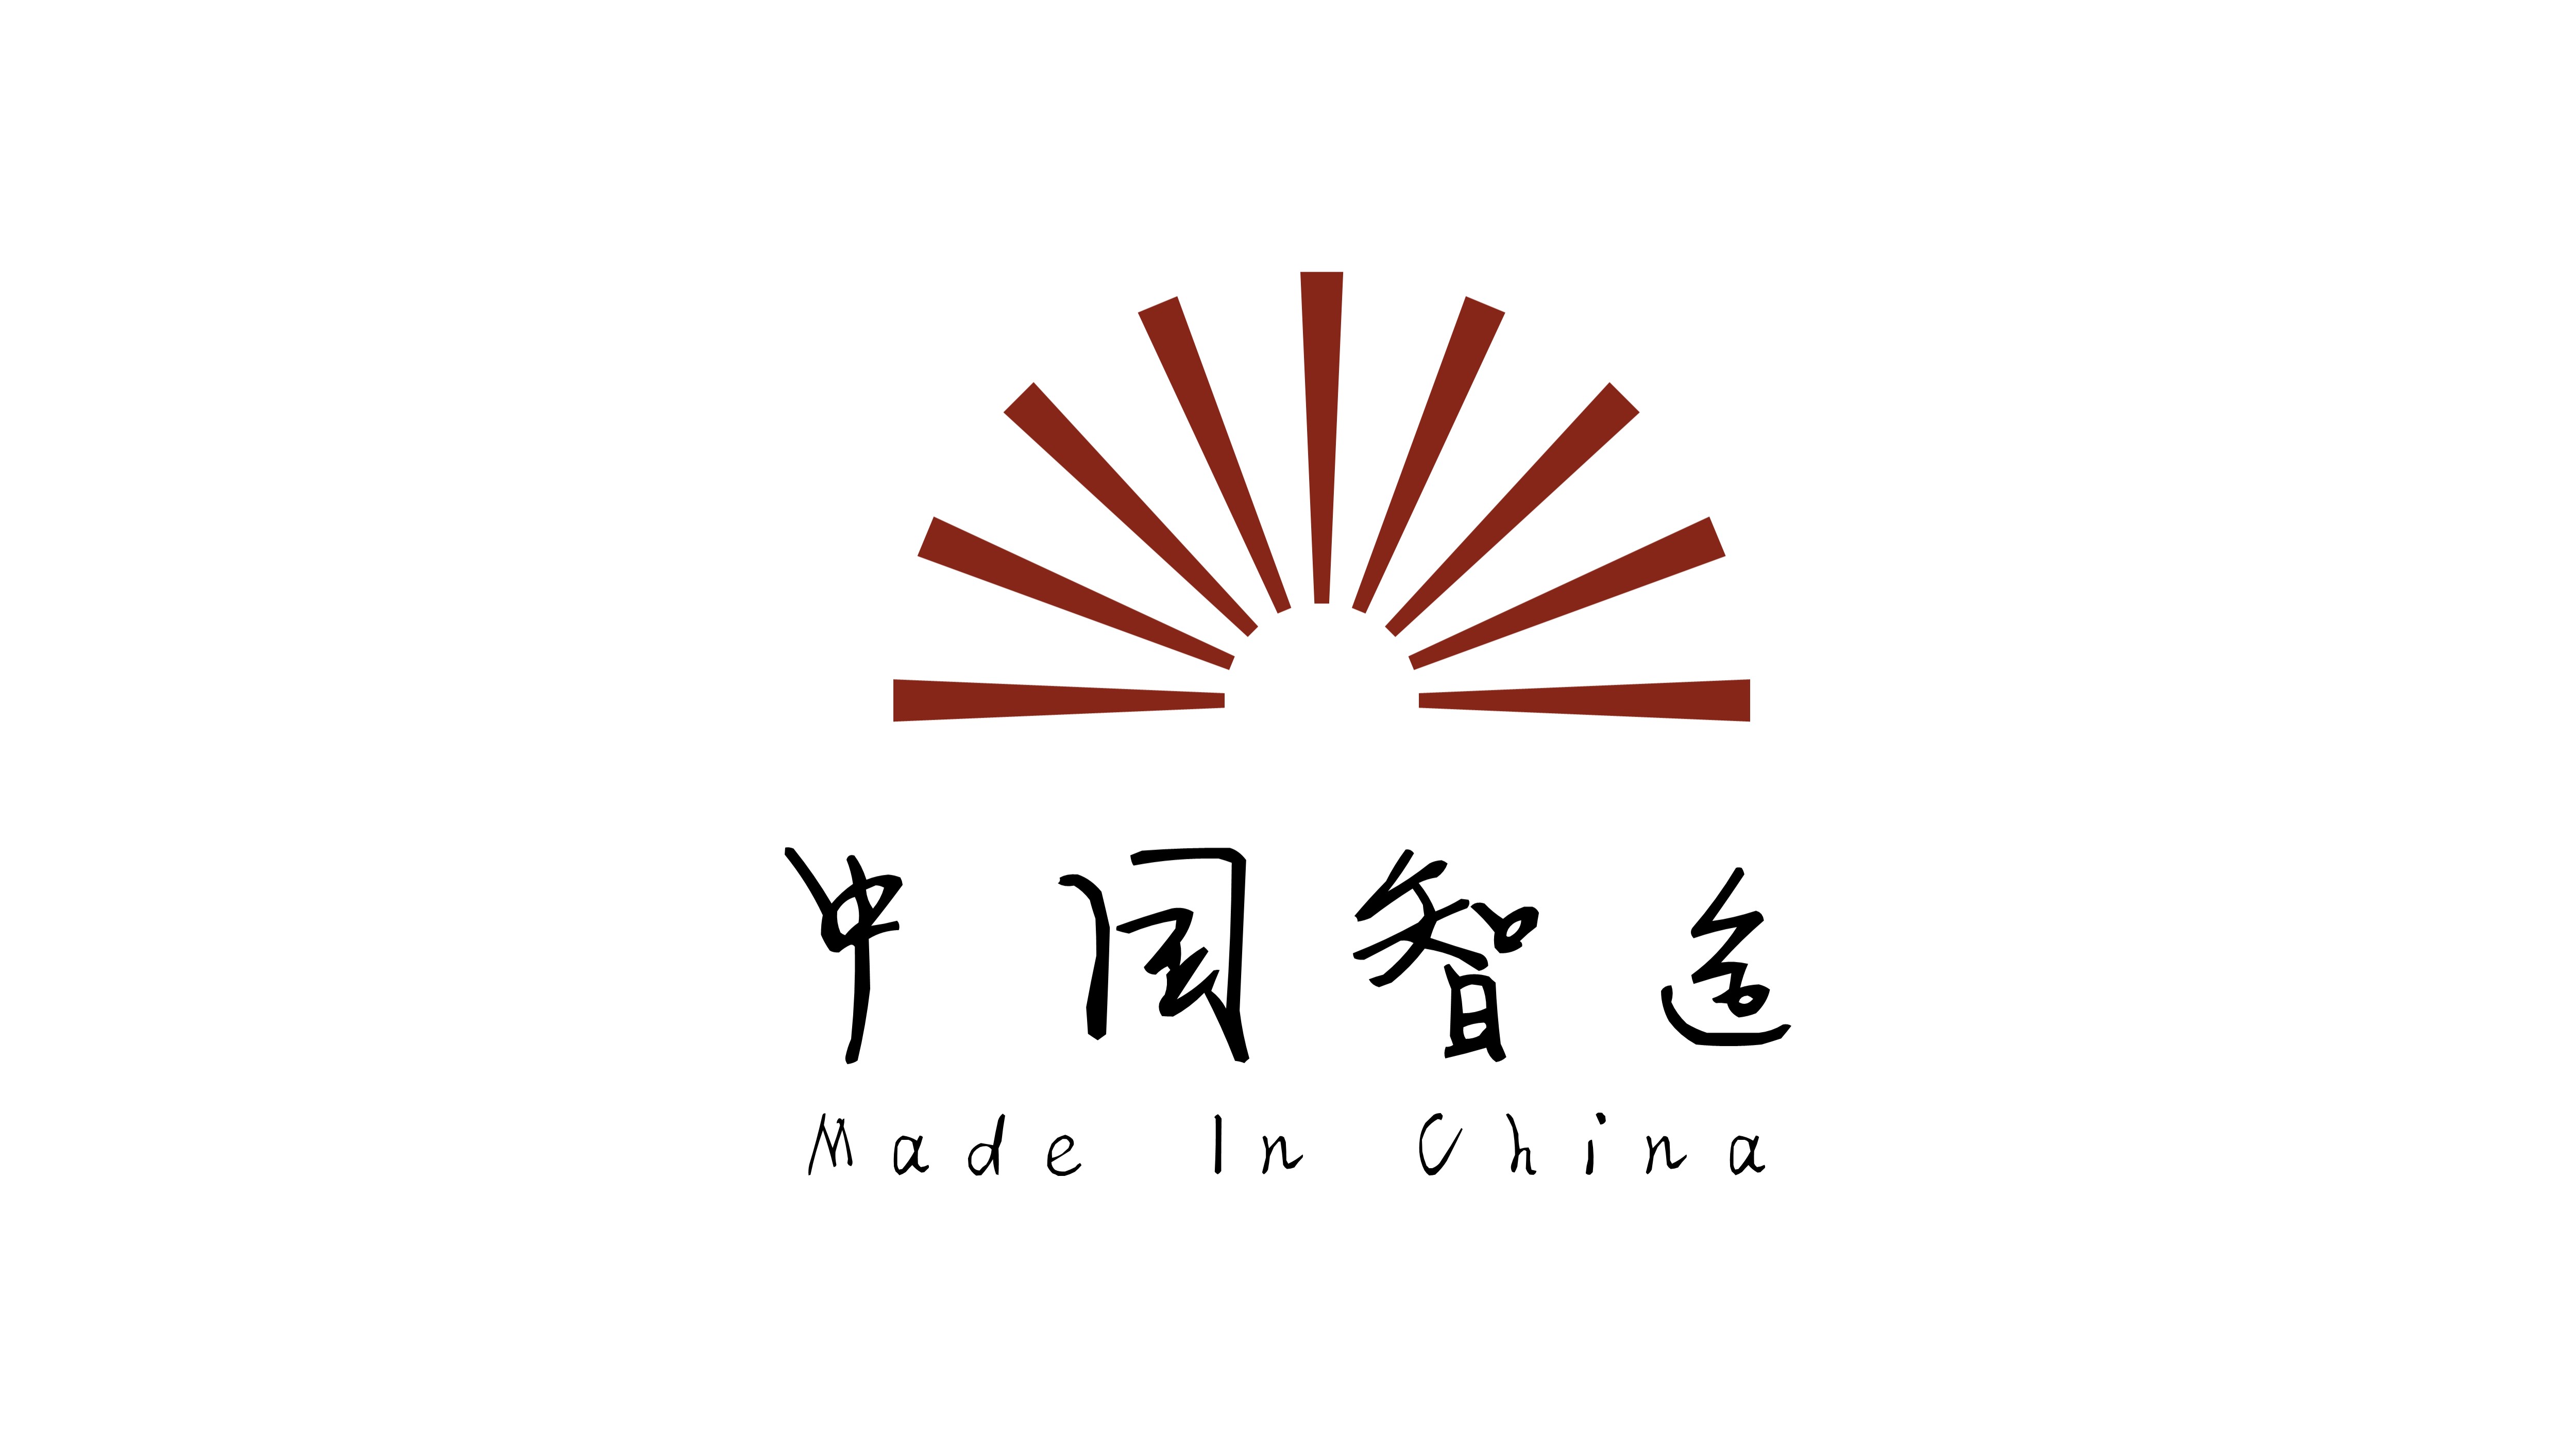 中国智造logo图片